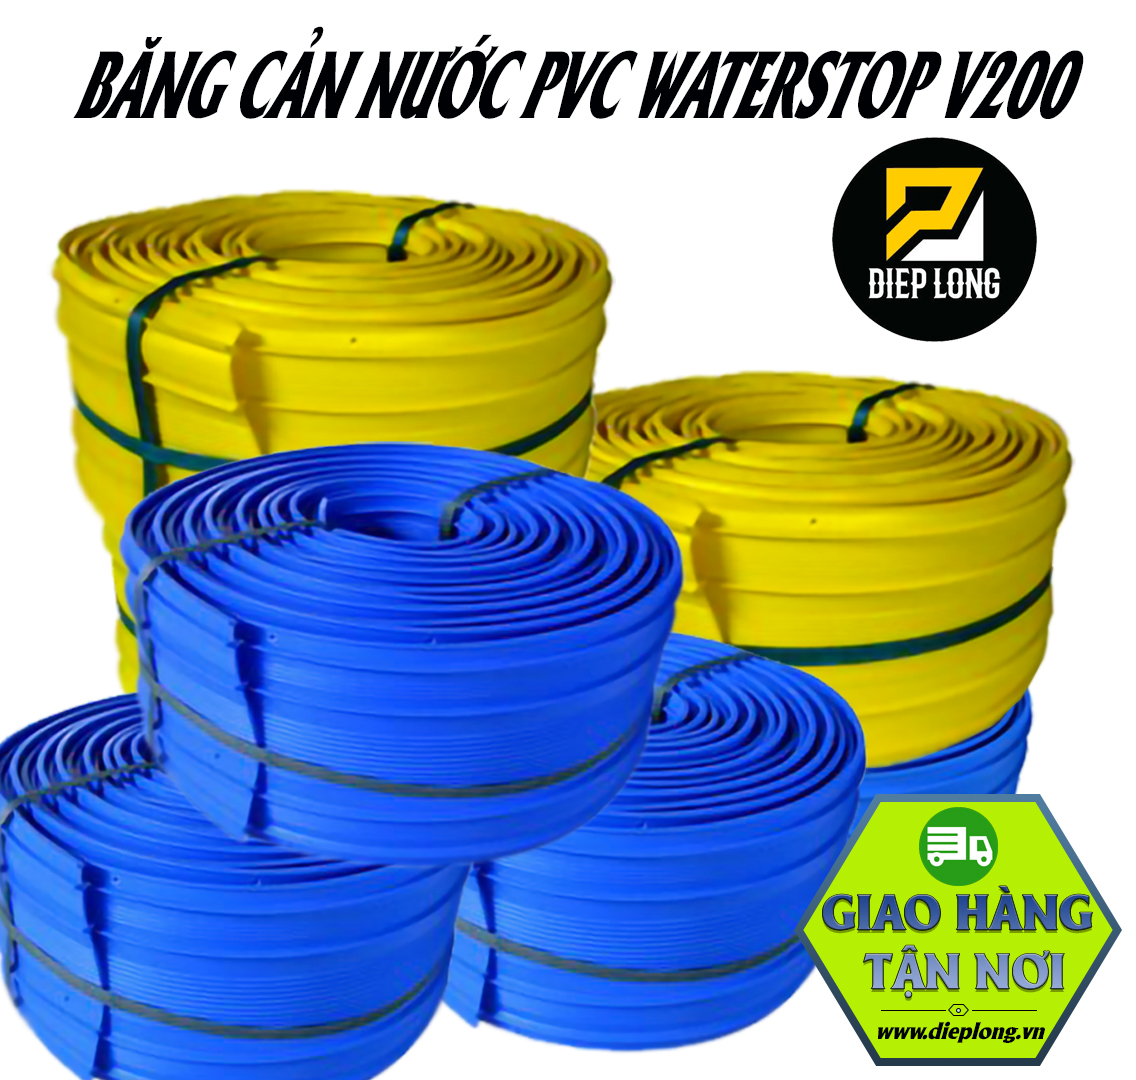 Băng cản nước PVC Waterstop V200 giá rẻ bình dương tại Diệp Long